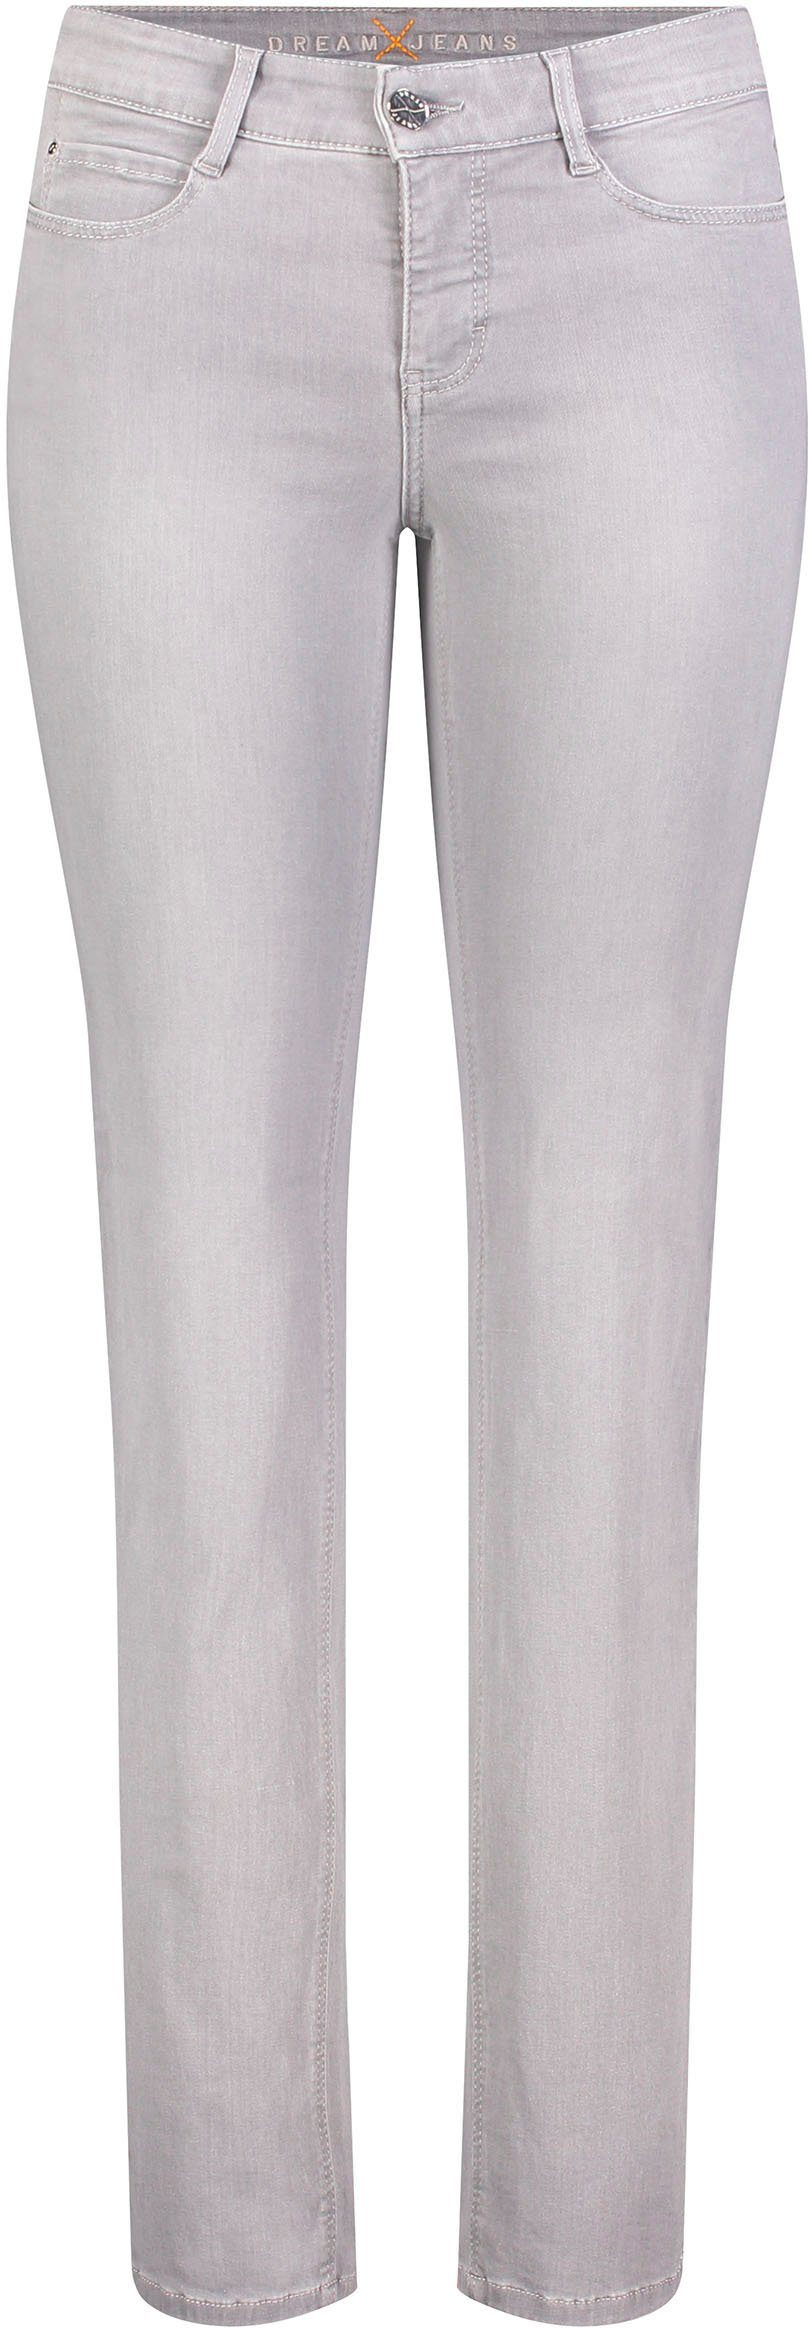 MAC Stretch-Jeans Dream für Stretch Sitz silver light mit perfekten grey den